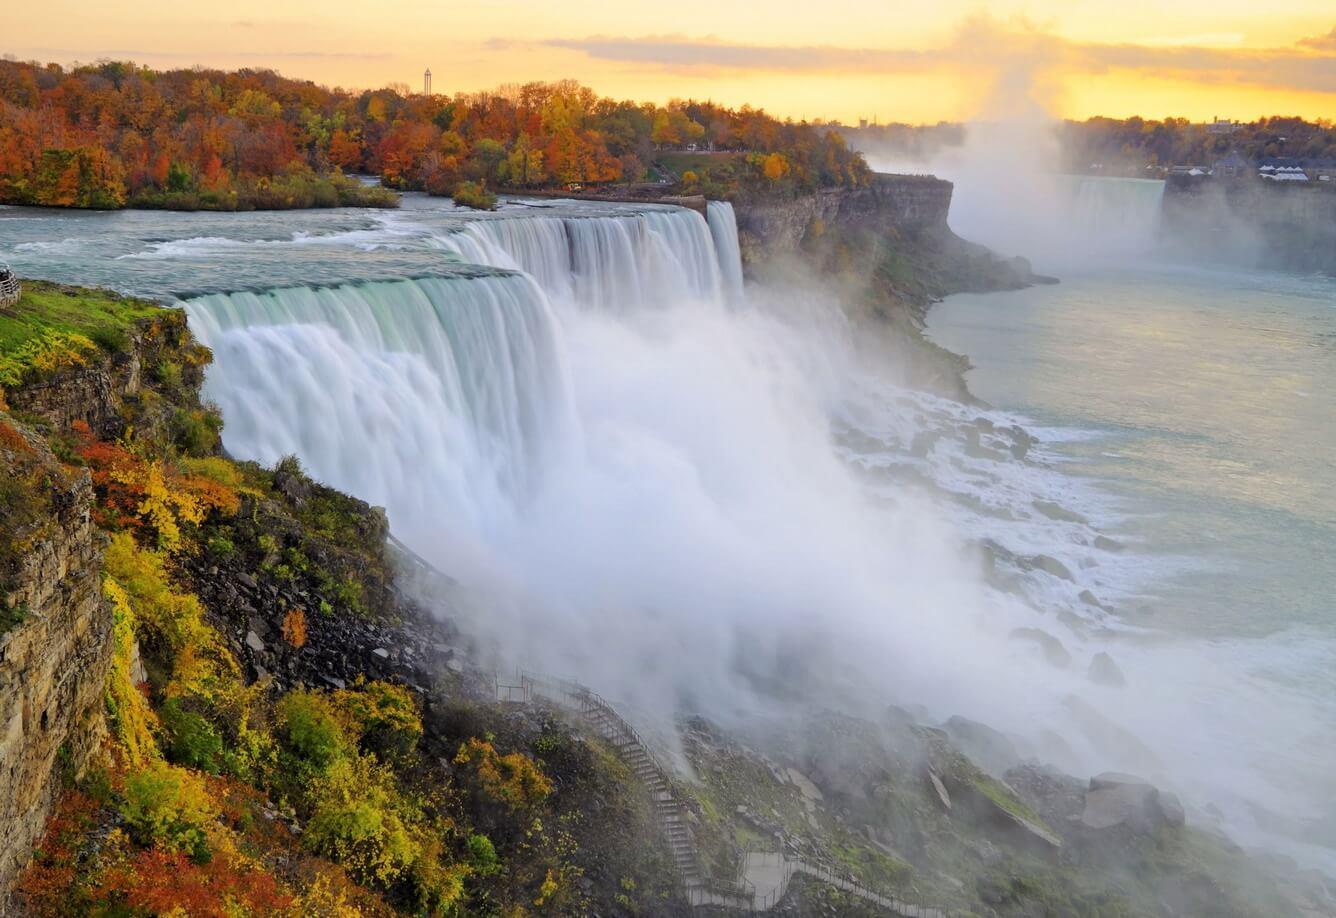 Du lịch thác Niagara đẹp nhất mùa thu | VIETRAVEL